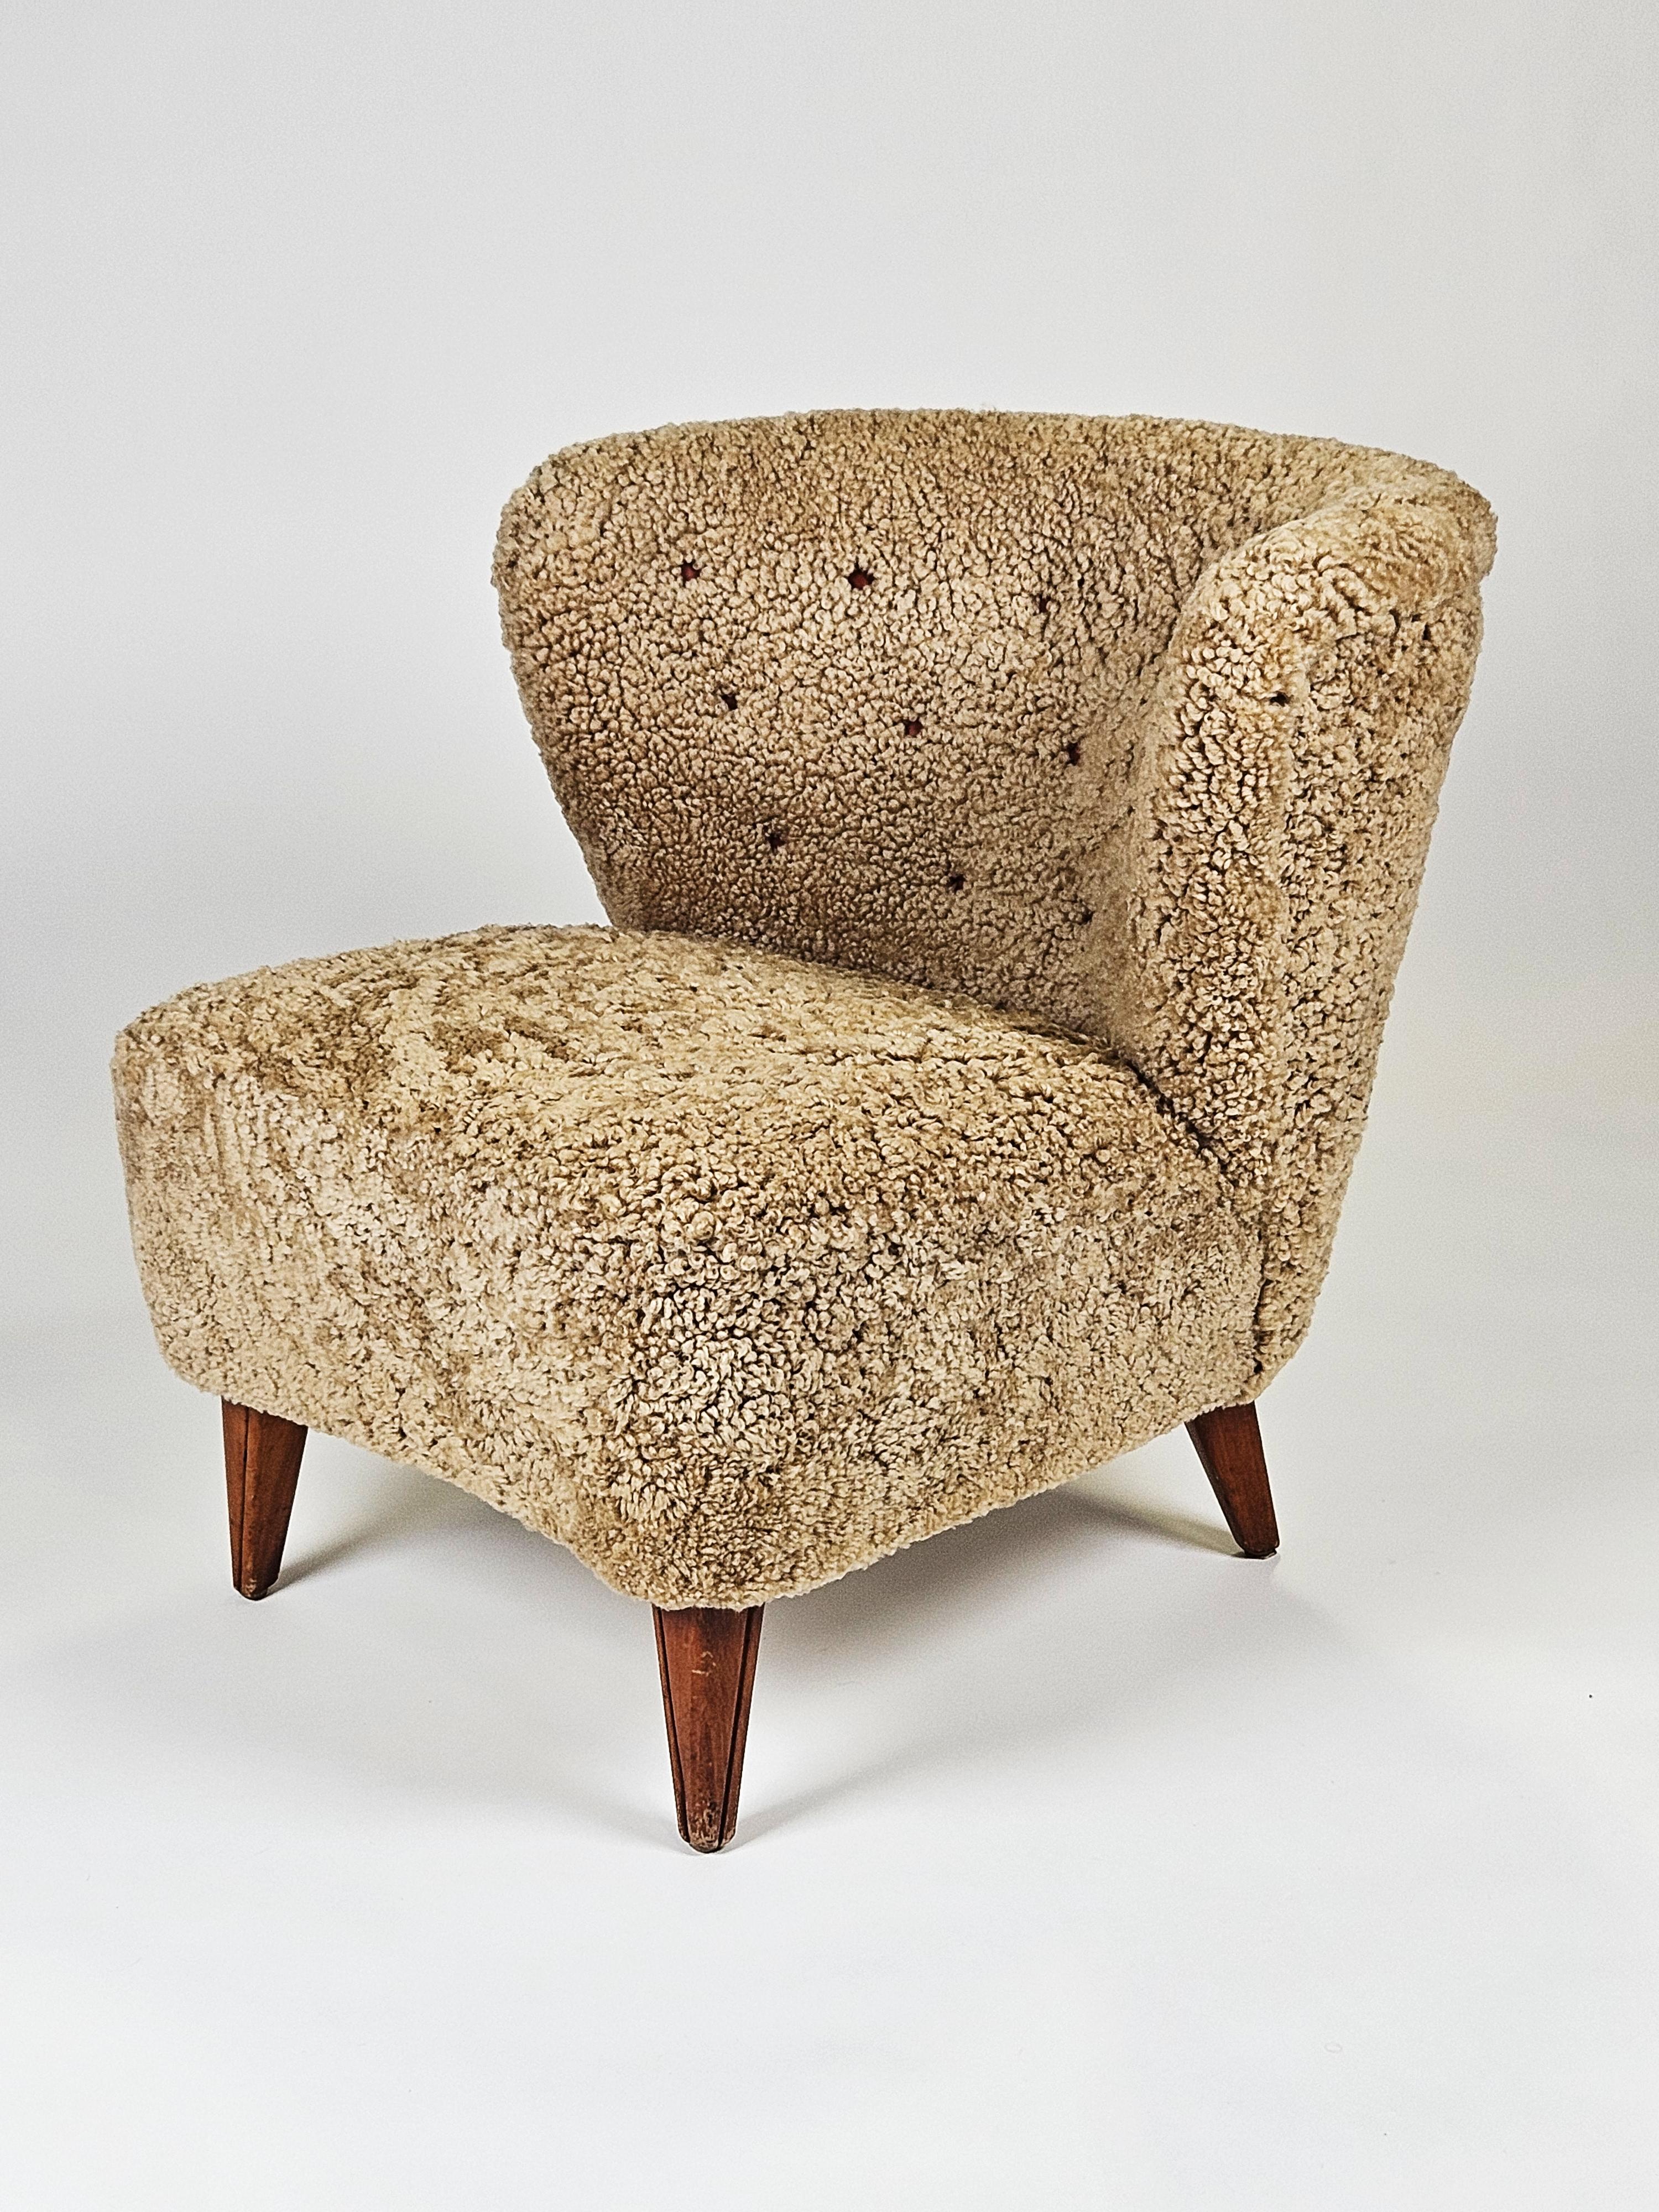 Klobiger Sessel, entworfen und hergestellt von Gösta Jonsson, Schweden, in den 1950er Jahren. 

Gepolstert mit honigfarbenem Schafsleder. 

Sauberes modernistisches Design. Ein wahrhaft skandinavisch-modernes Stück. 